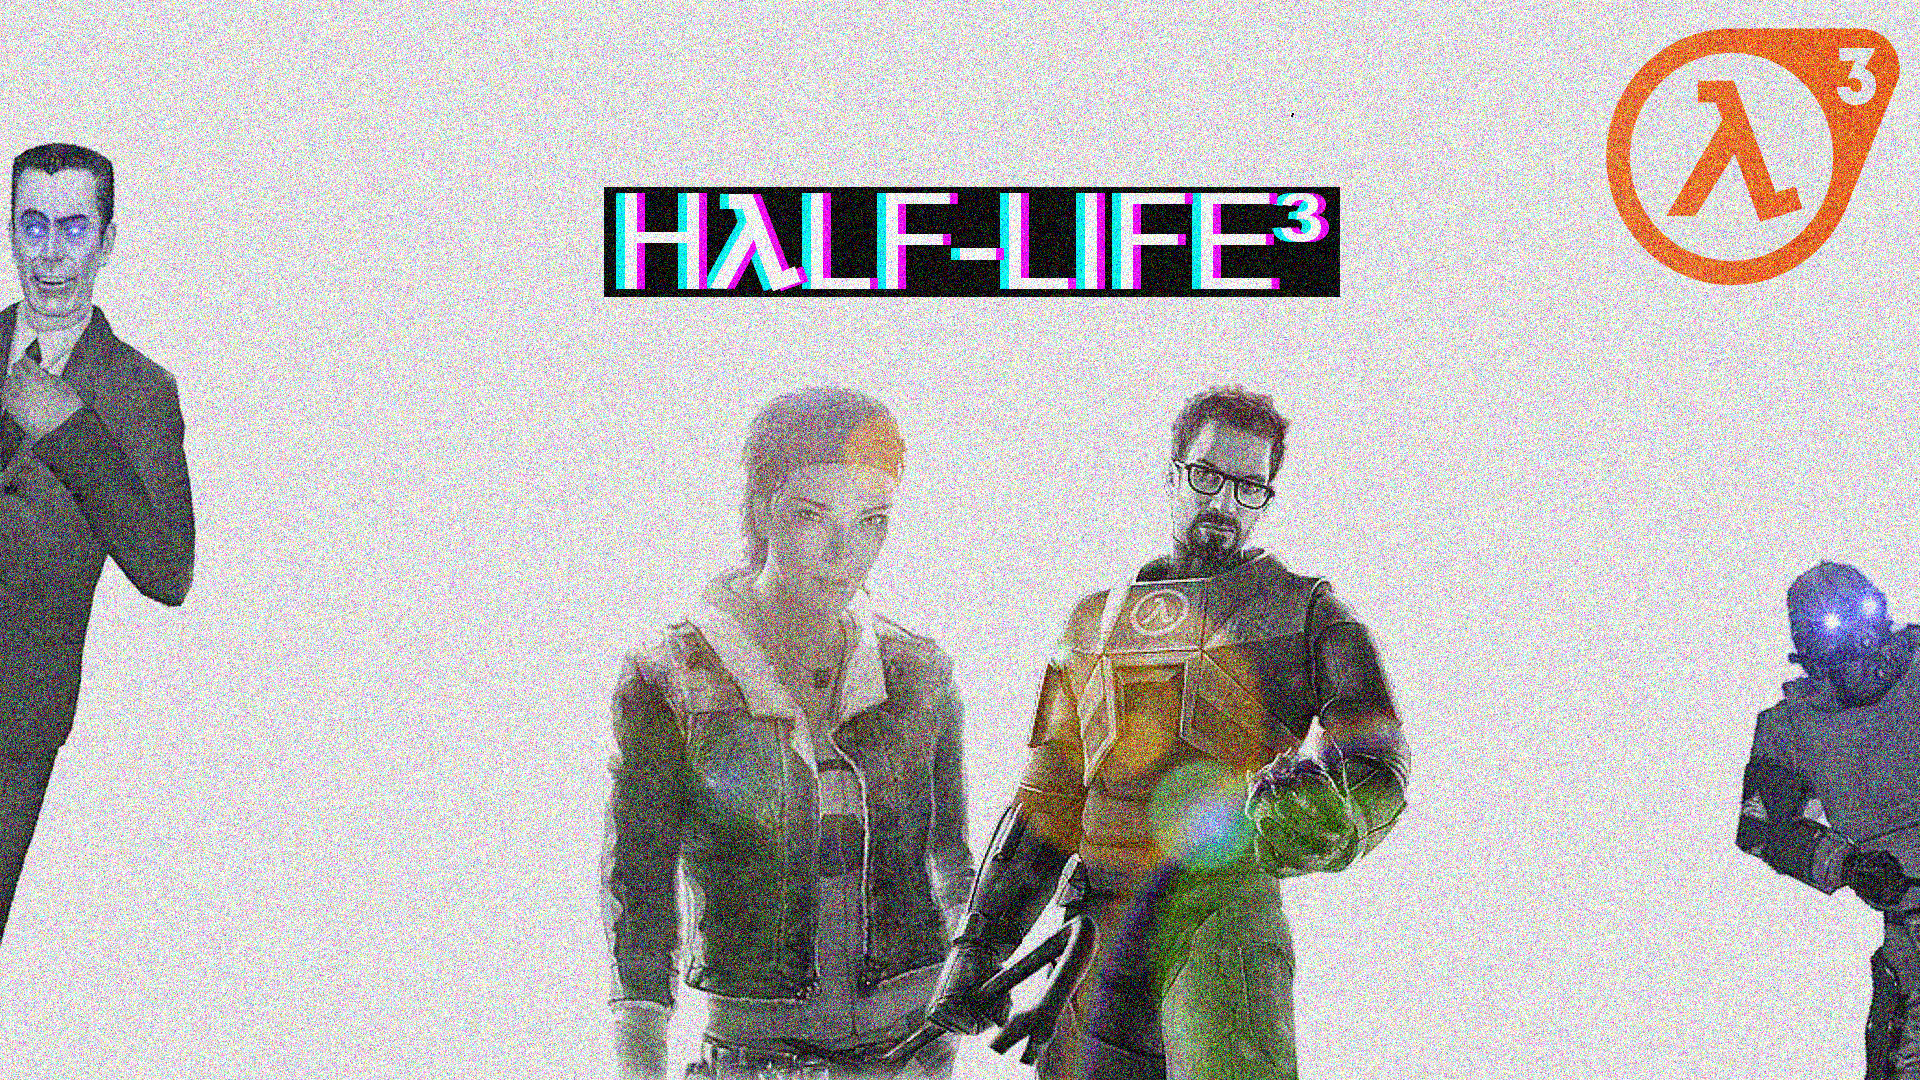 Half Life 2 Half Life 3 Video Games 1920x1080